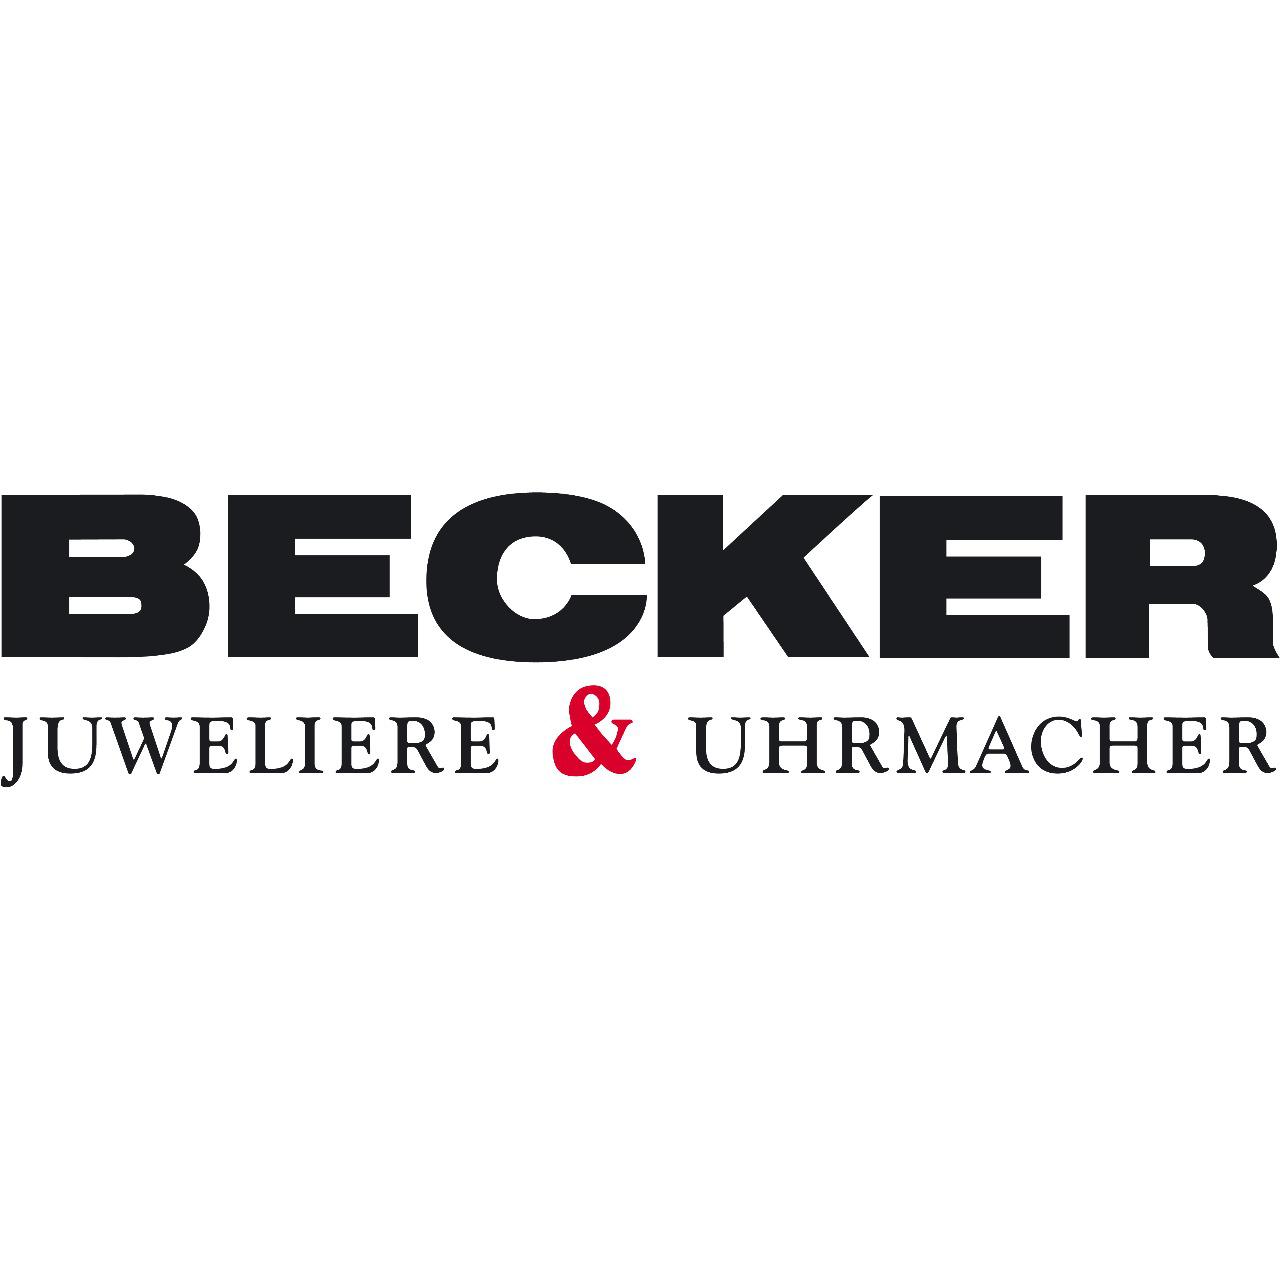 Becker Jewellers & Watchmakers in Hamburg - Logo